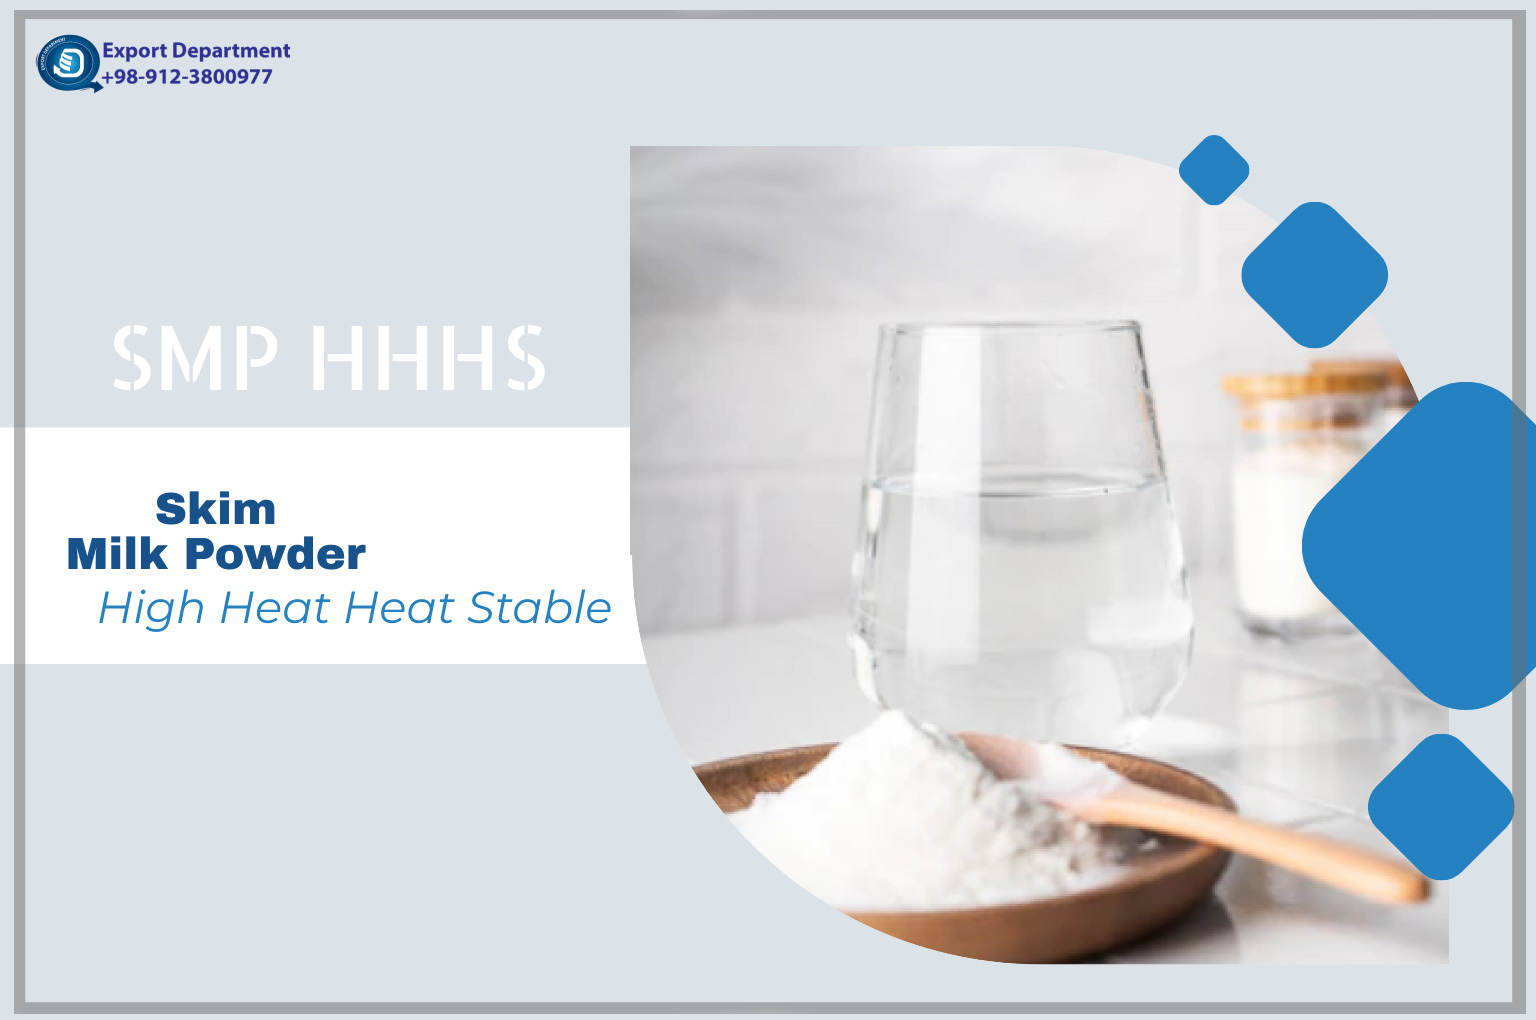 راهنمای پودر شیر خشک بدون چربی پایدار فرادما (SMP HHHS)